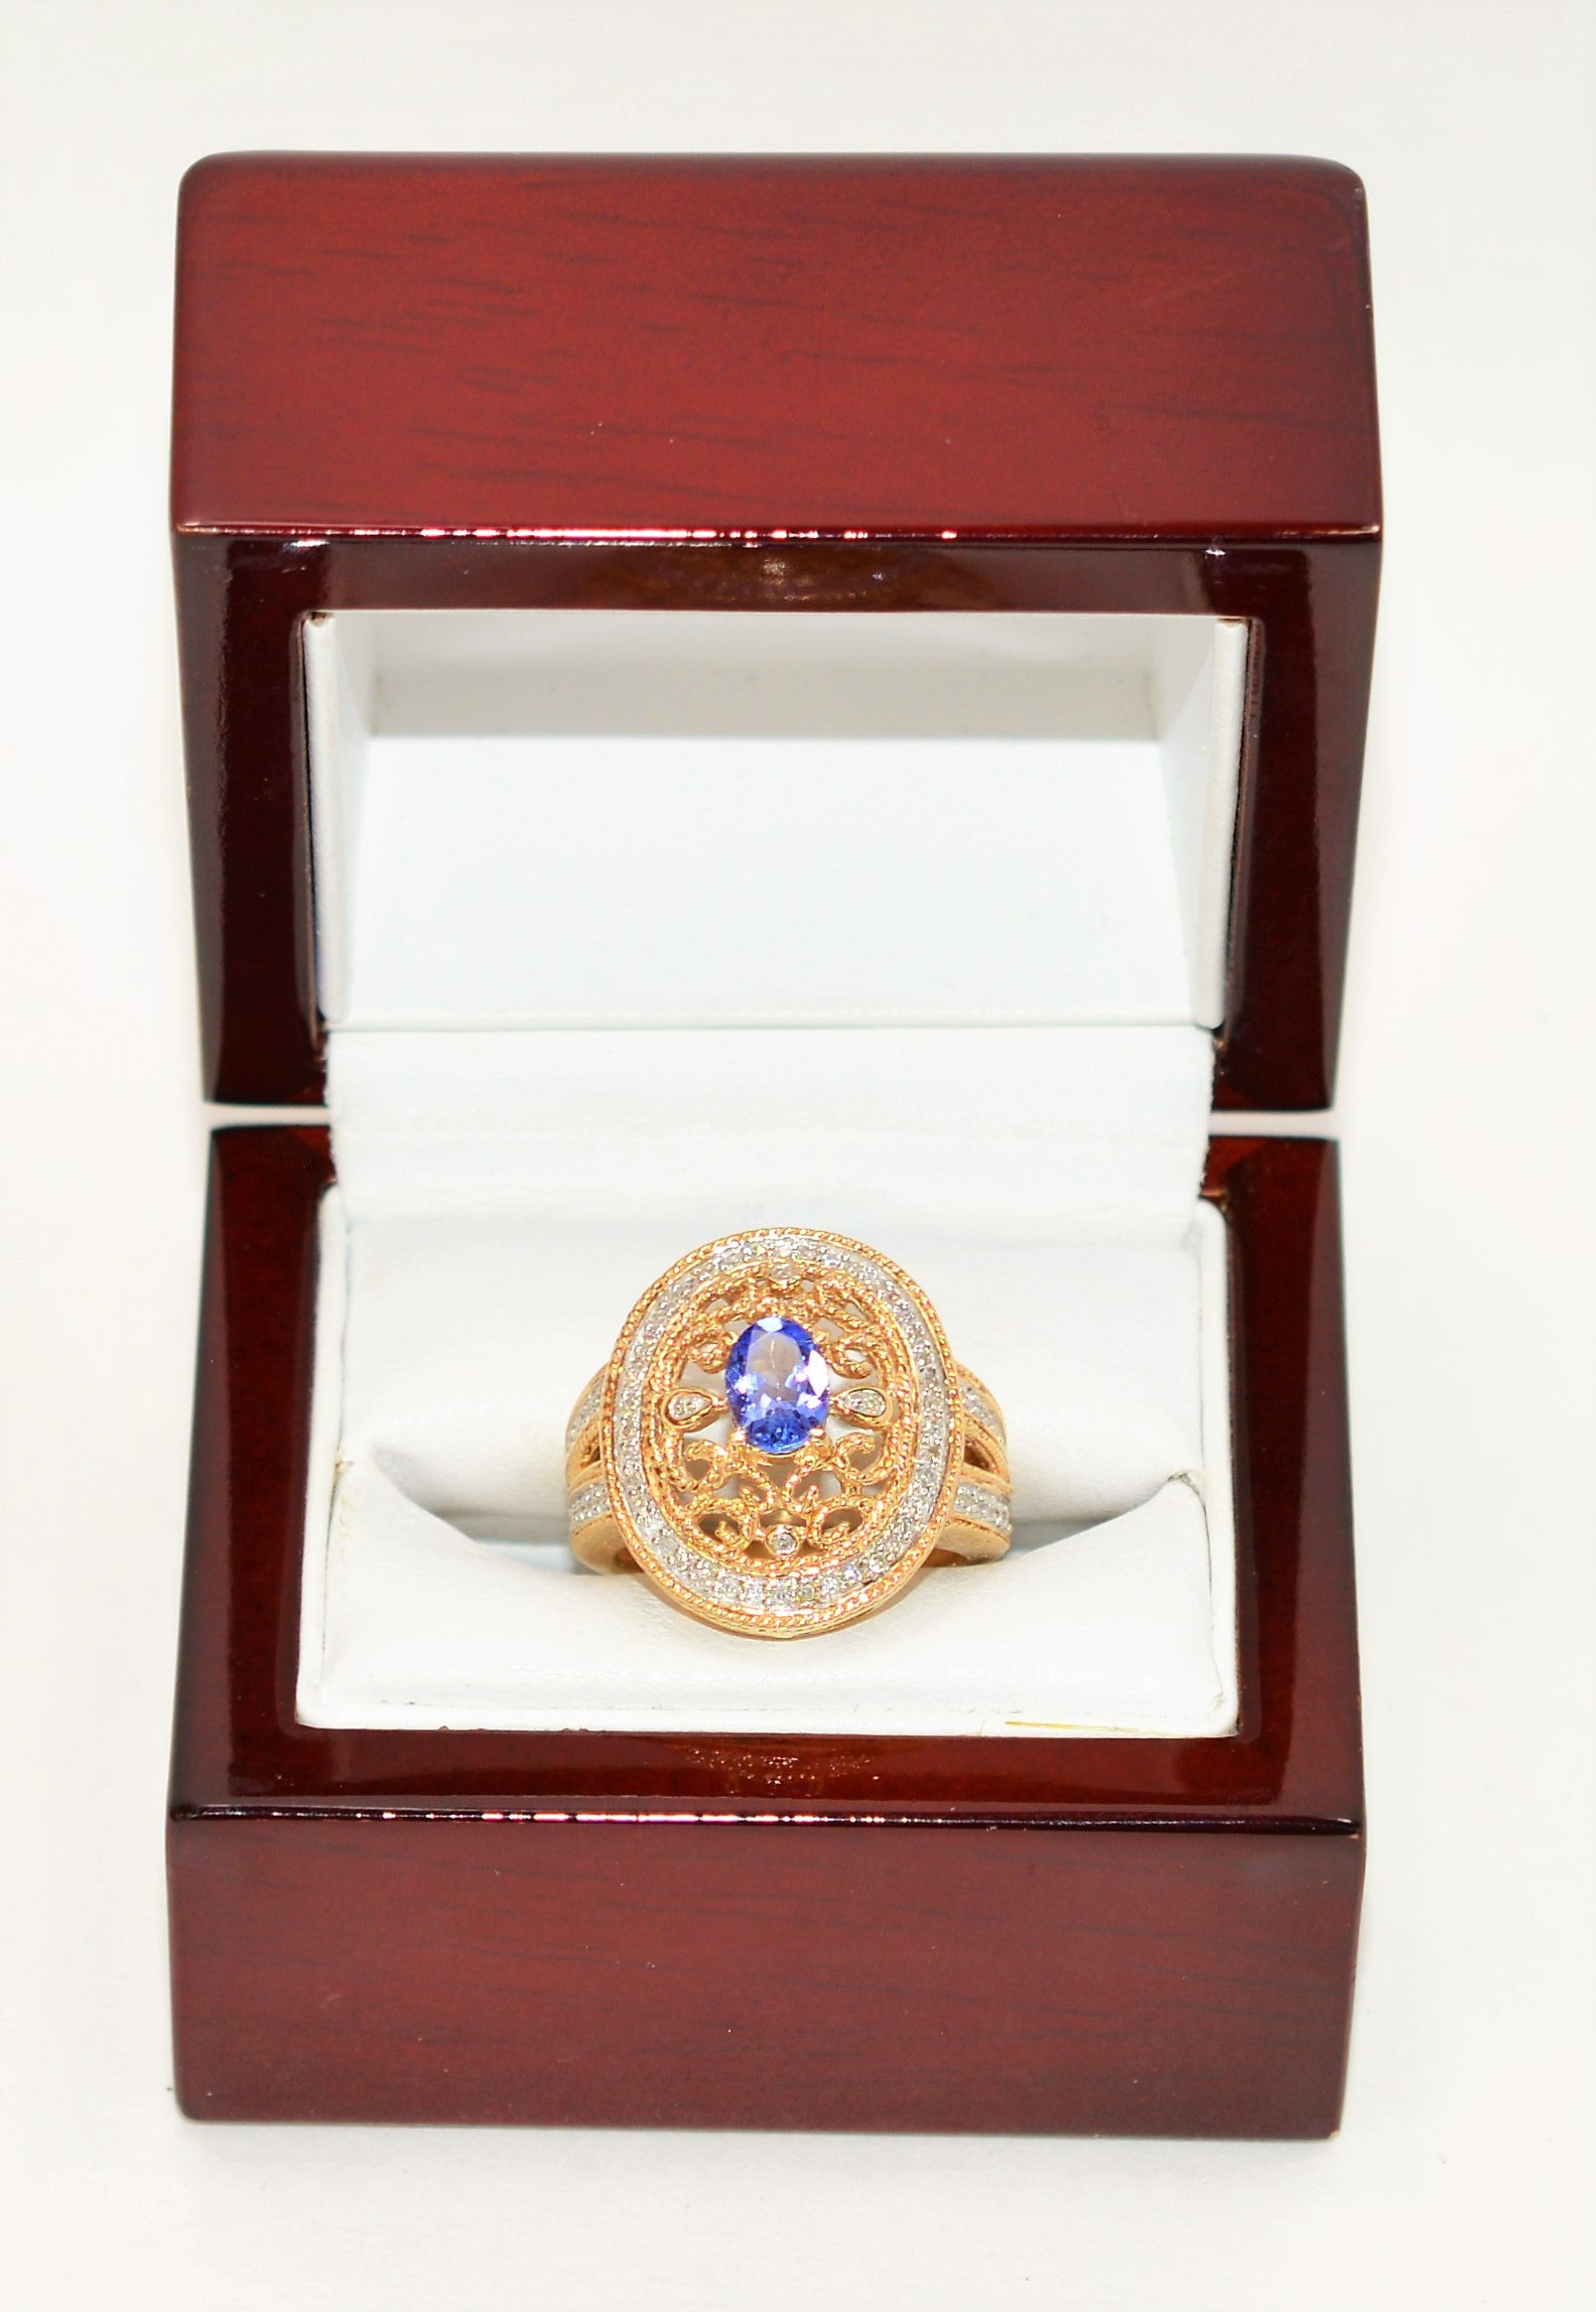 Natural Tanzanite & Diamond Ring 10K Solid Gold 1.34tcw Cocktail Ring Tanzanite Ring Statement Ring Fashion Ring Vintage Ring Women's Ring